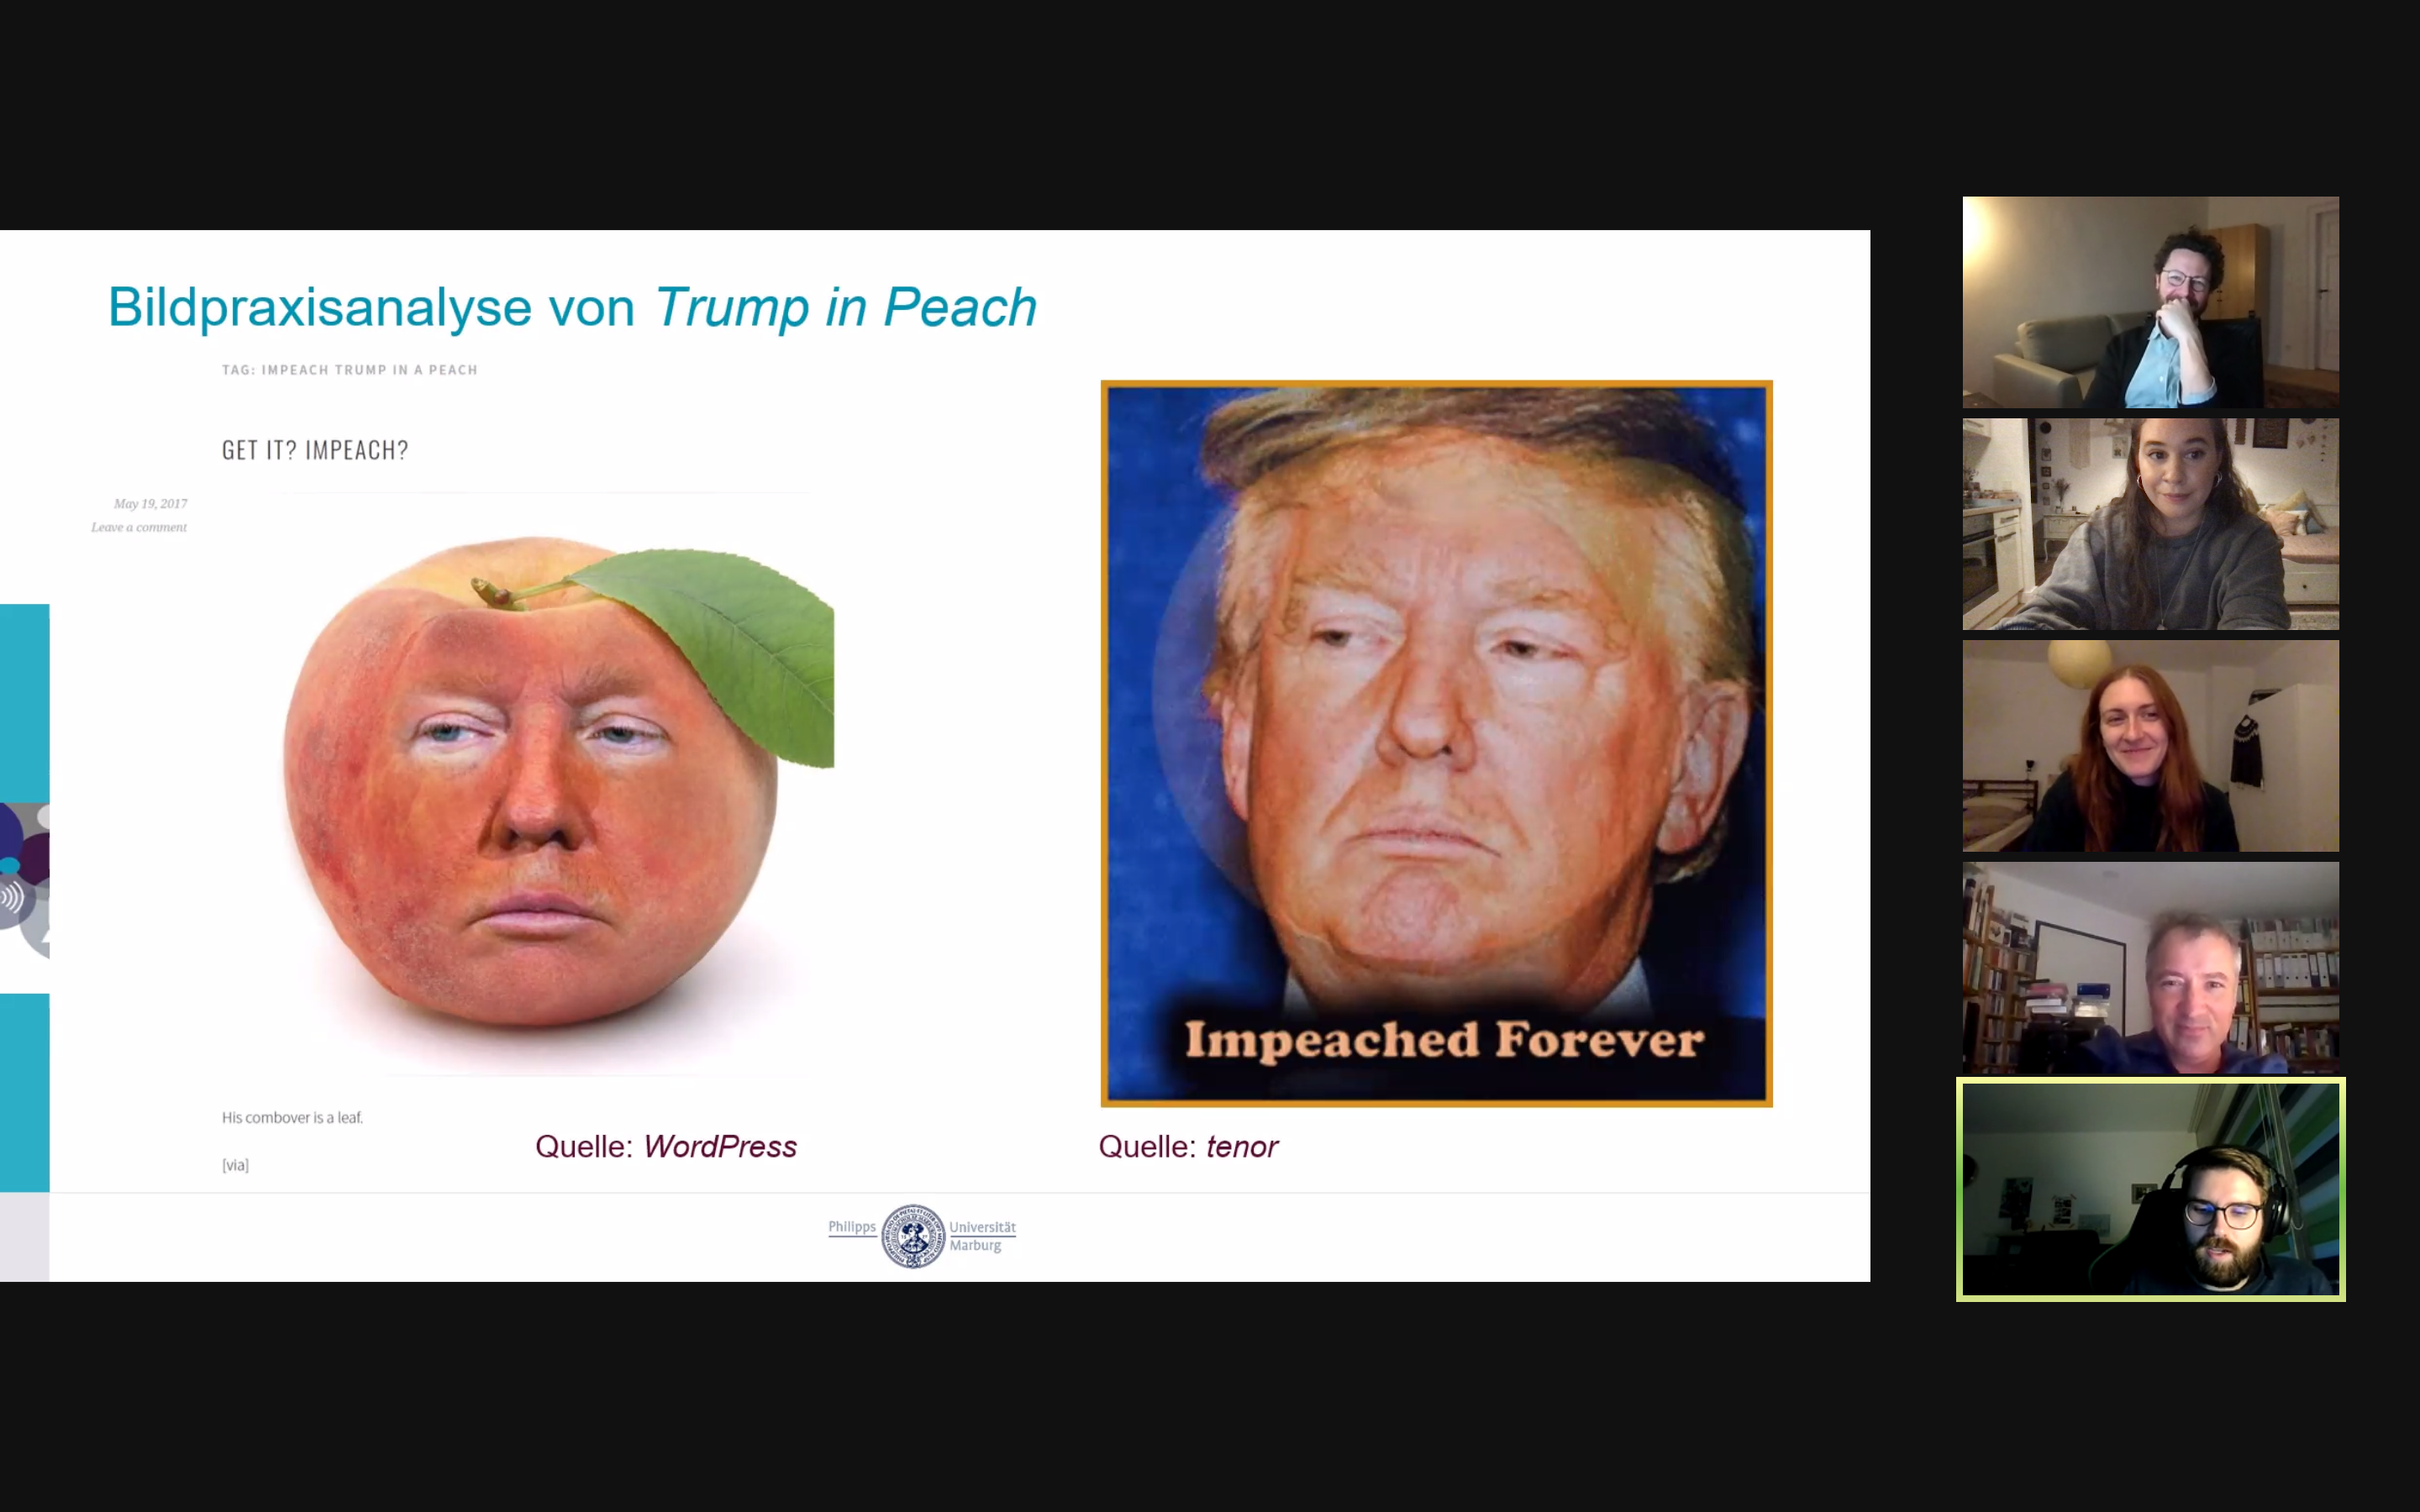 Präsentation der Case Study zu Trump in Peach auf dem Workshop